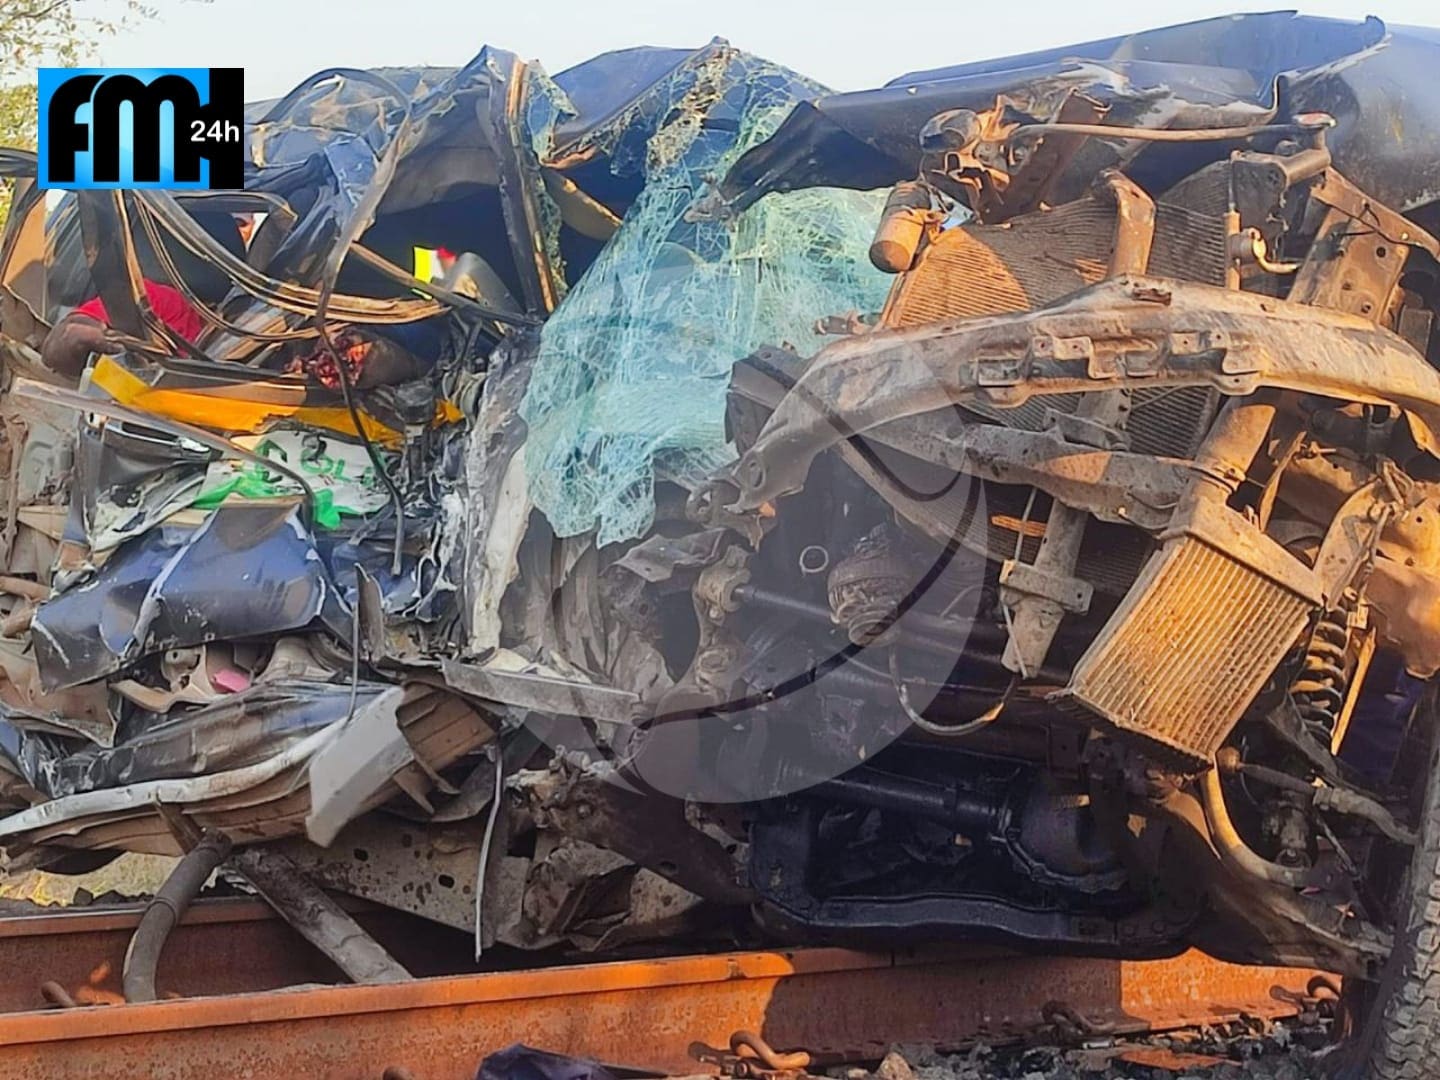 A viatura foi arrastada por uma locomotiva da mineradora Vulcan na passagem de nível de Cateme no distrito de Moatize, província de Tete.